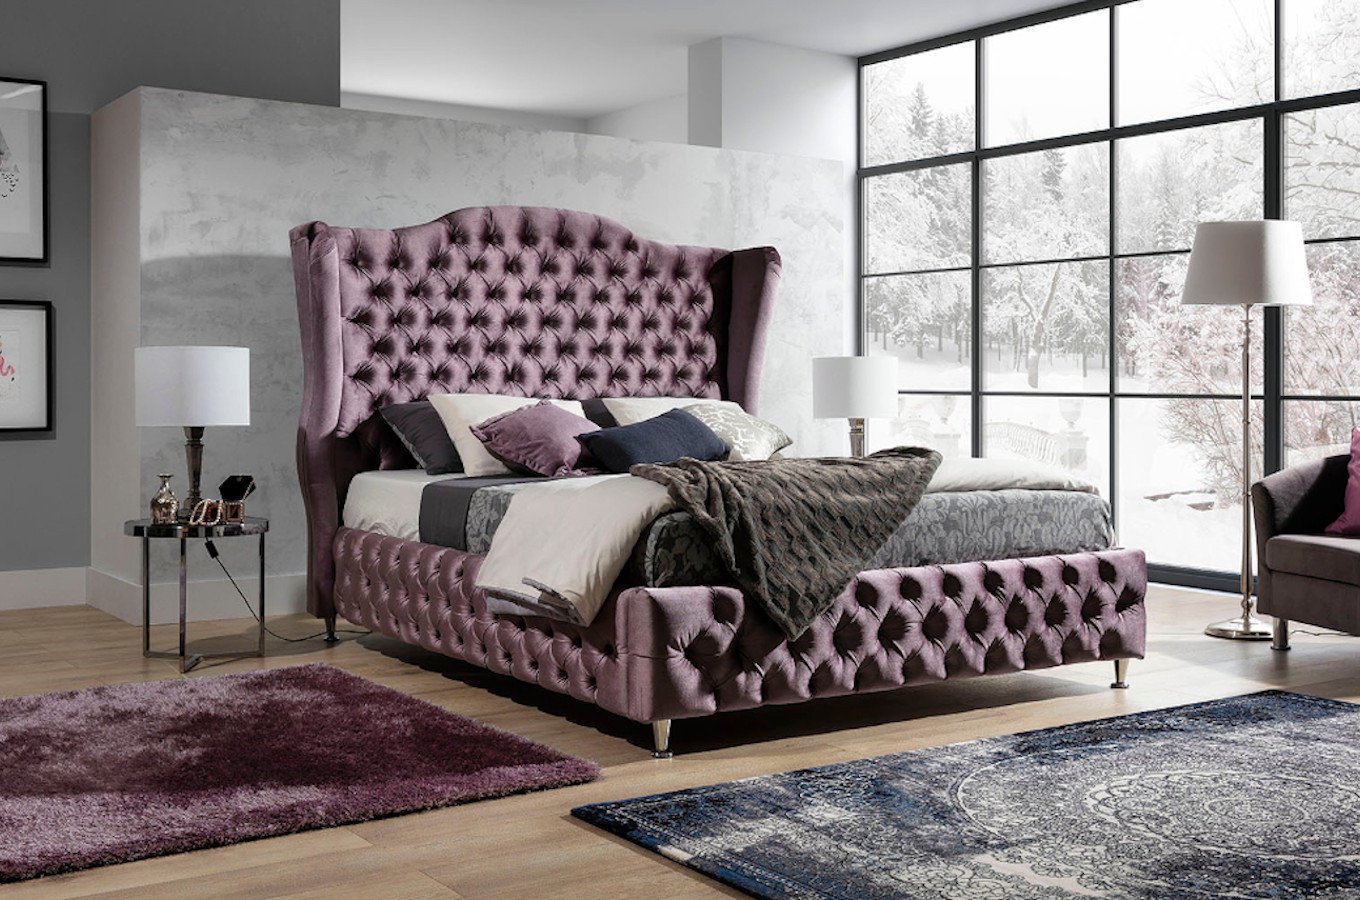 Eleganckie łóżko tapicerowane do sypialni VALENTINO w stylu glamour. Obniżka ceny!